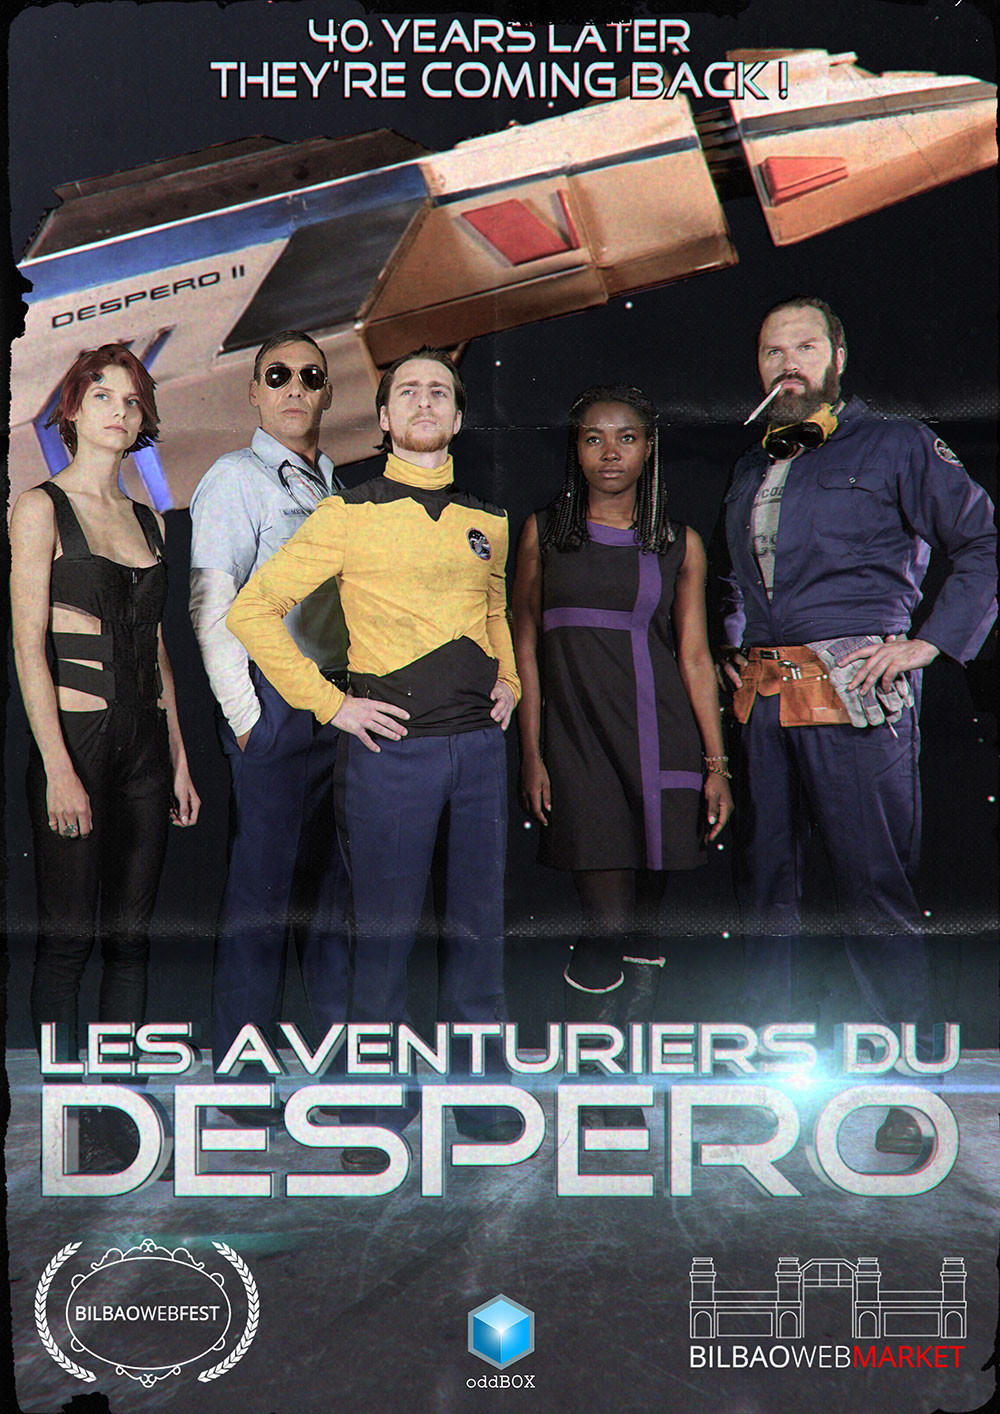 Despero's Adventures Poster (BilbaoWebMarket)